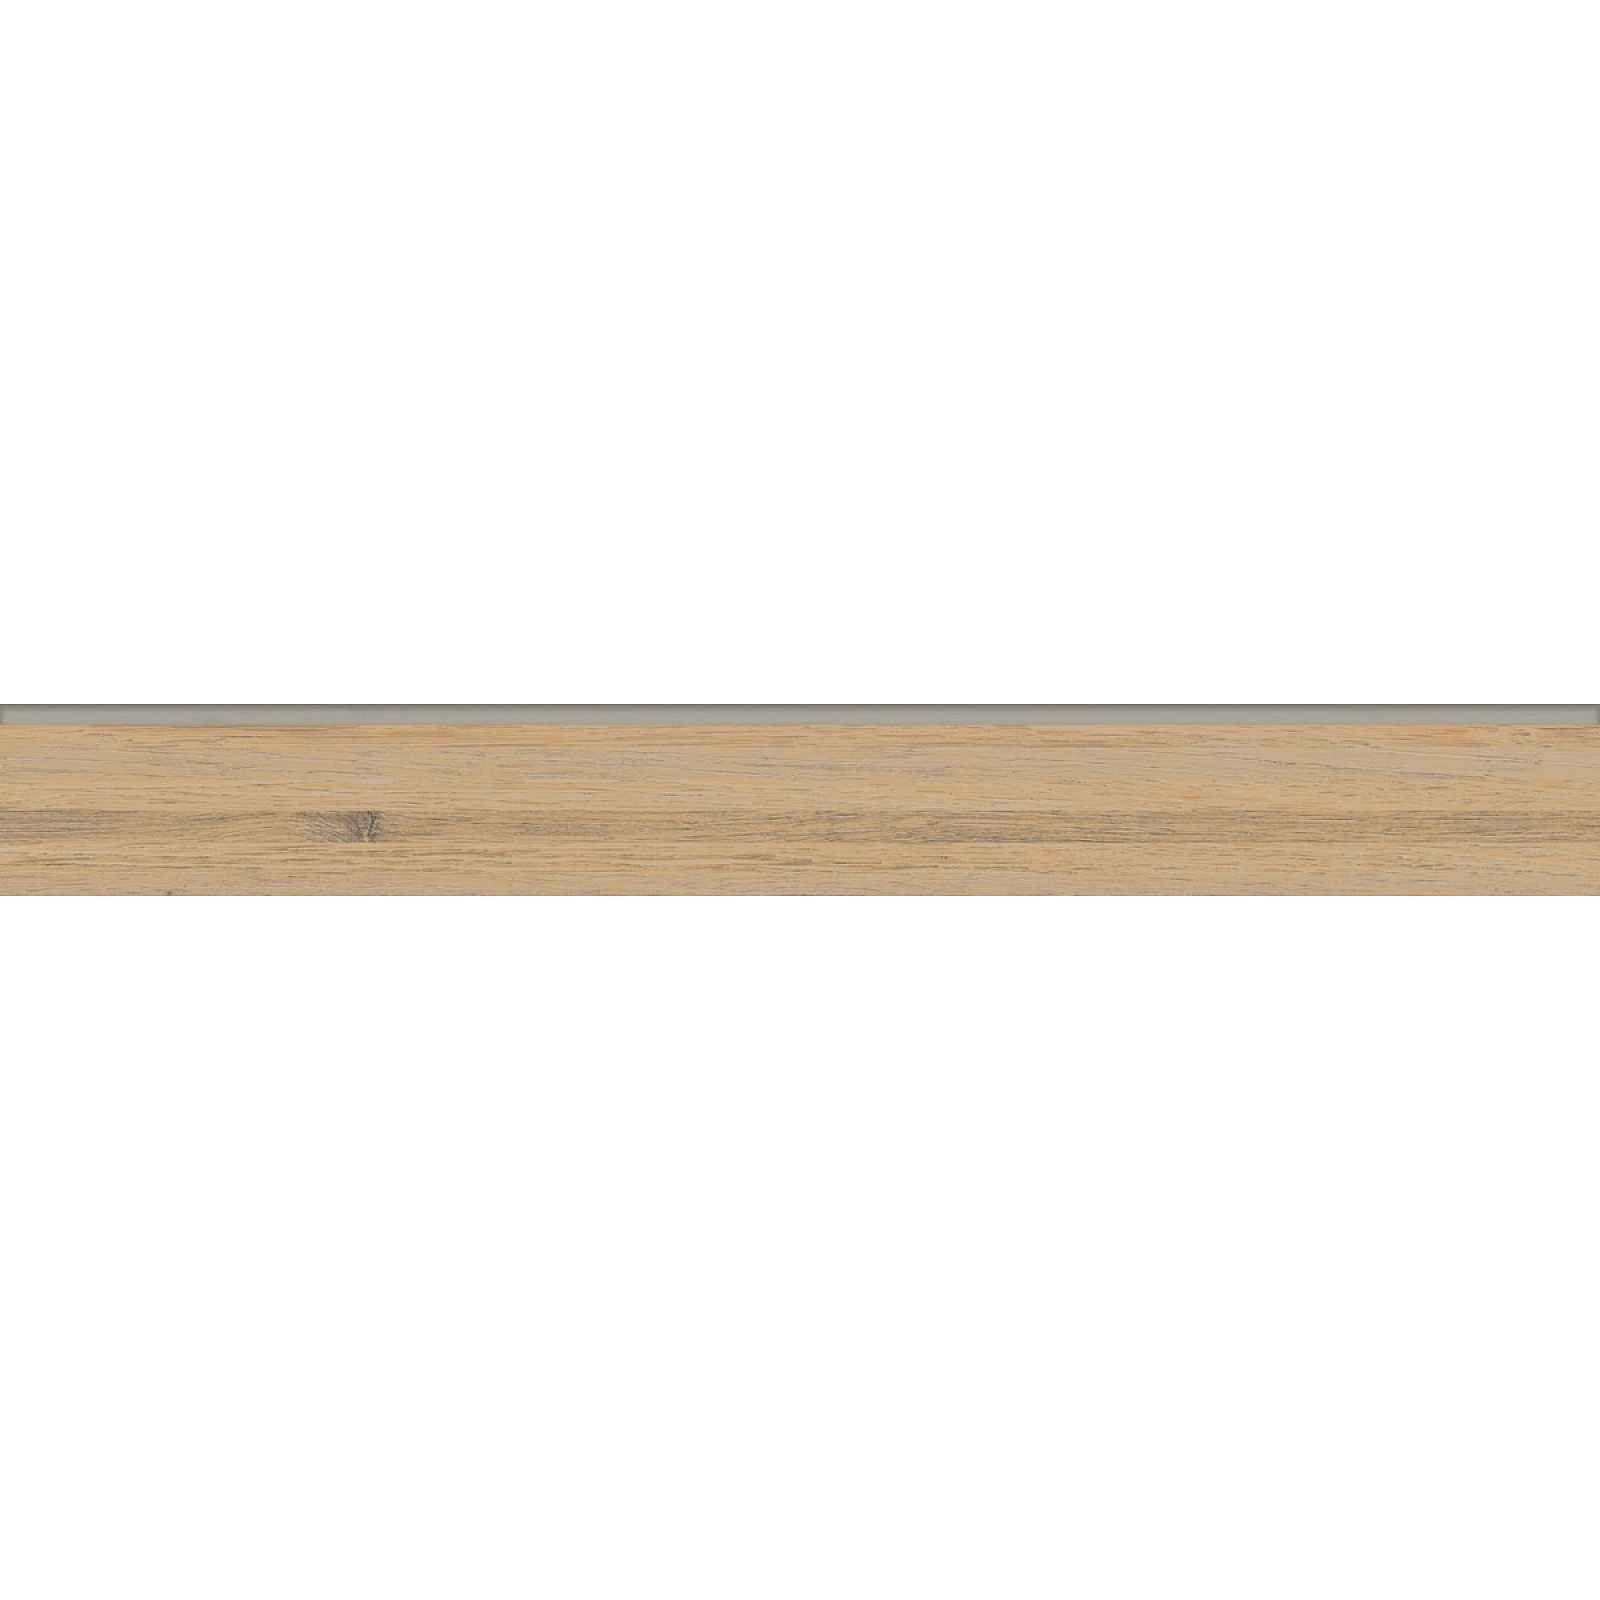 Sokl Rako Plywood Straw 60x7,2 cm mat DSASP842.1